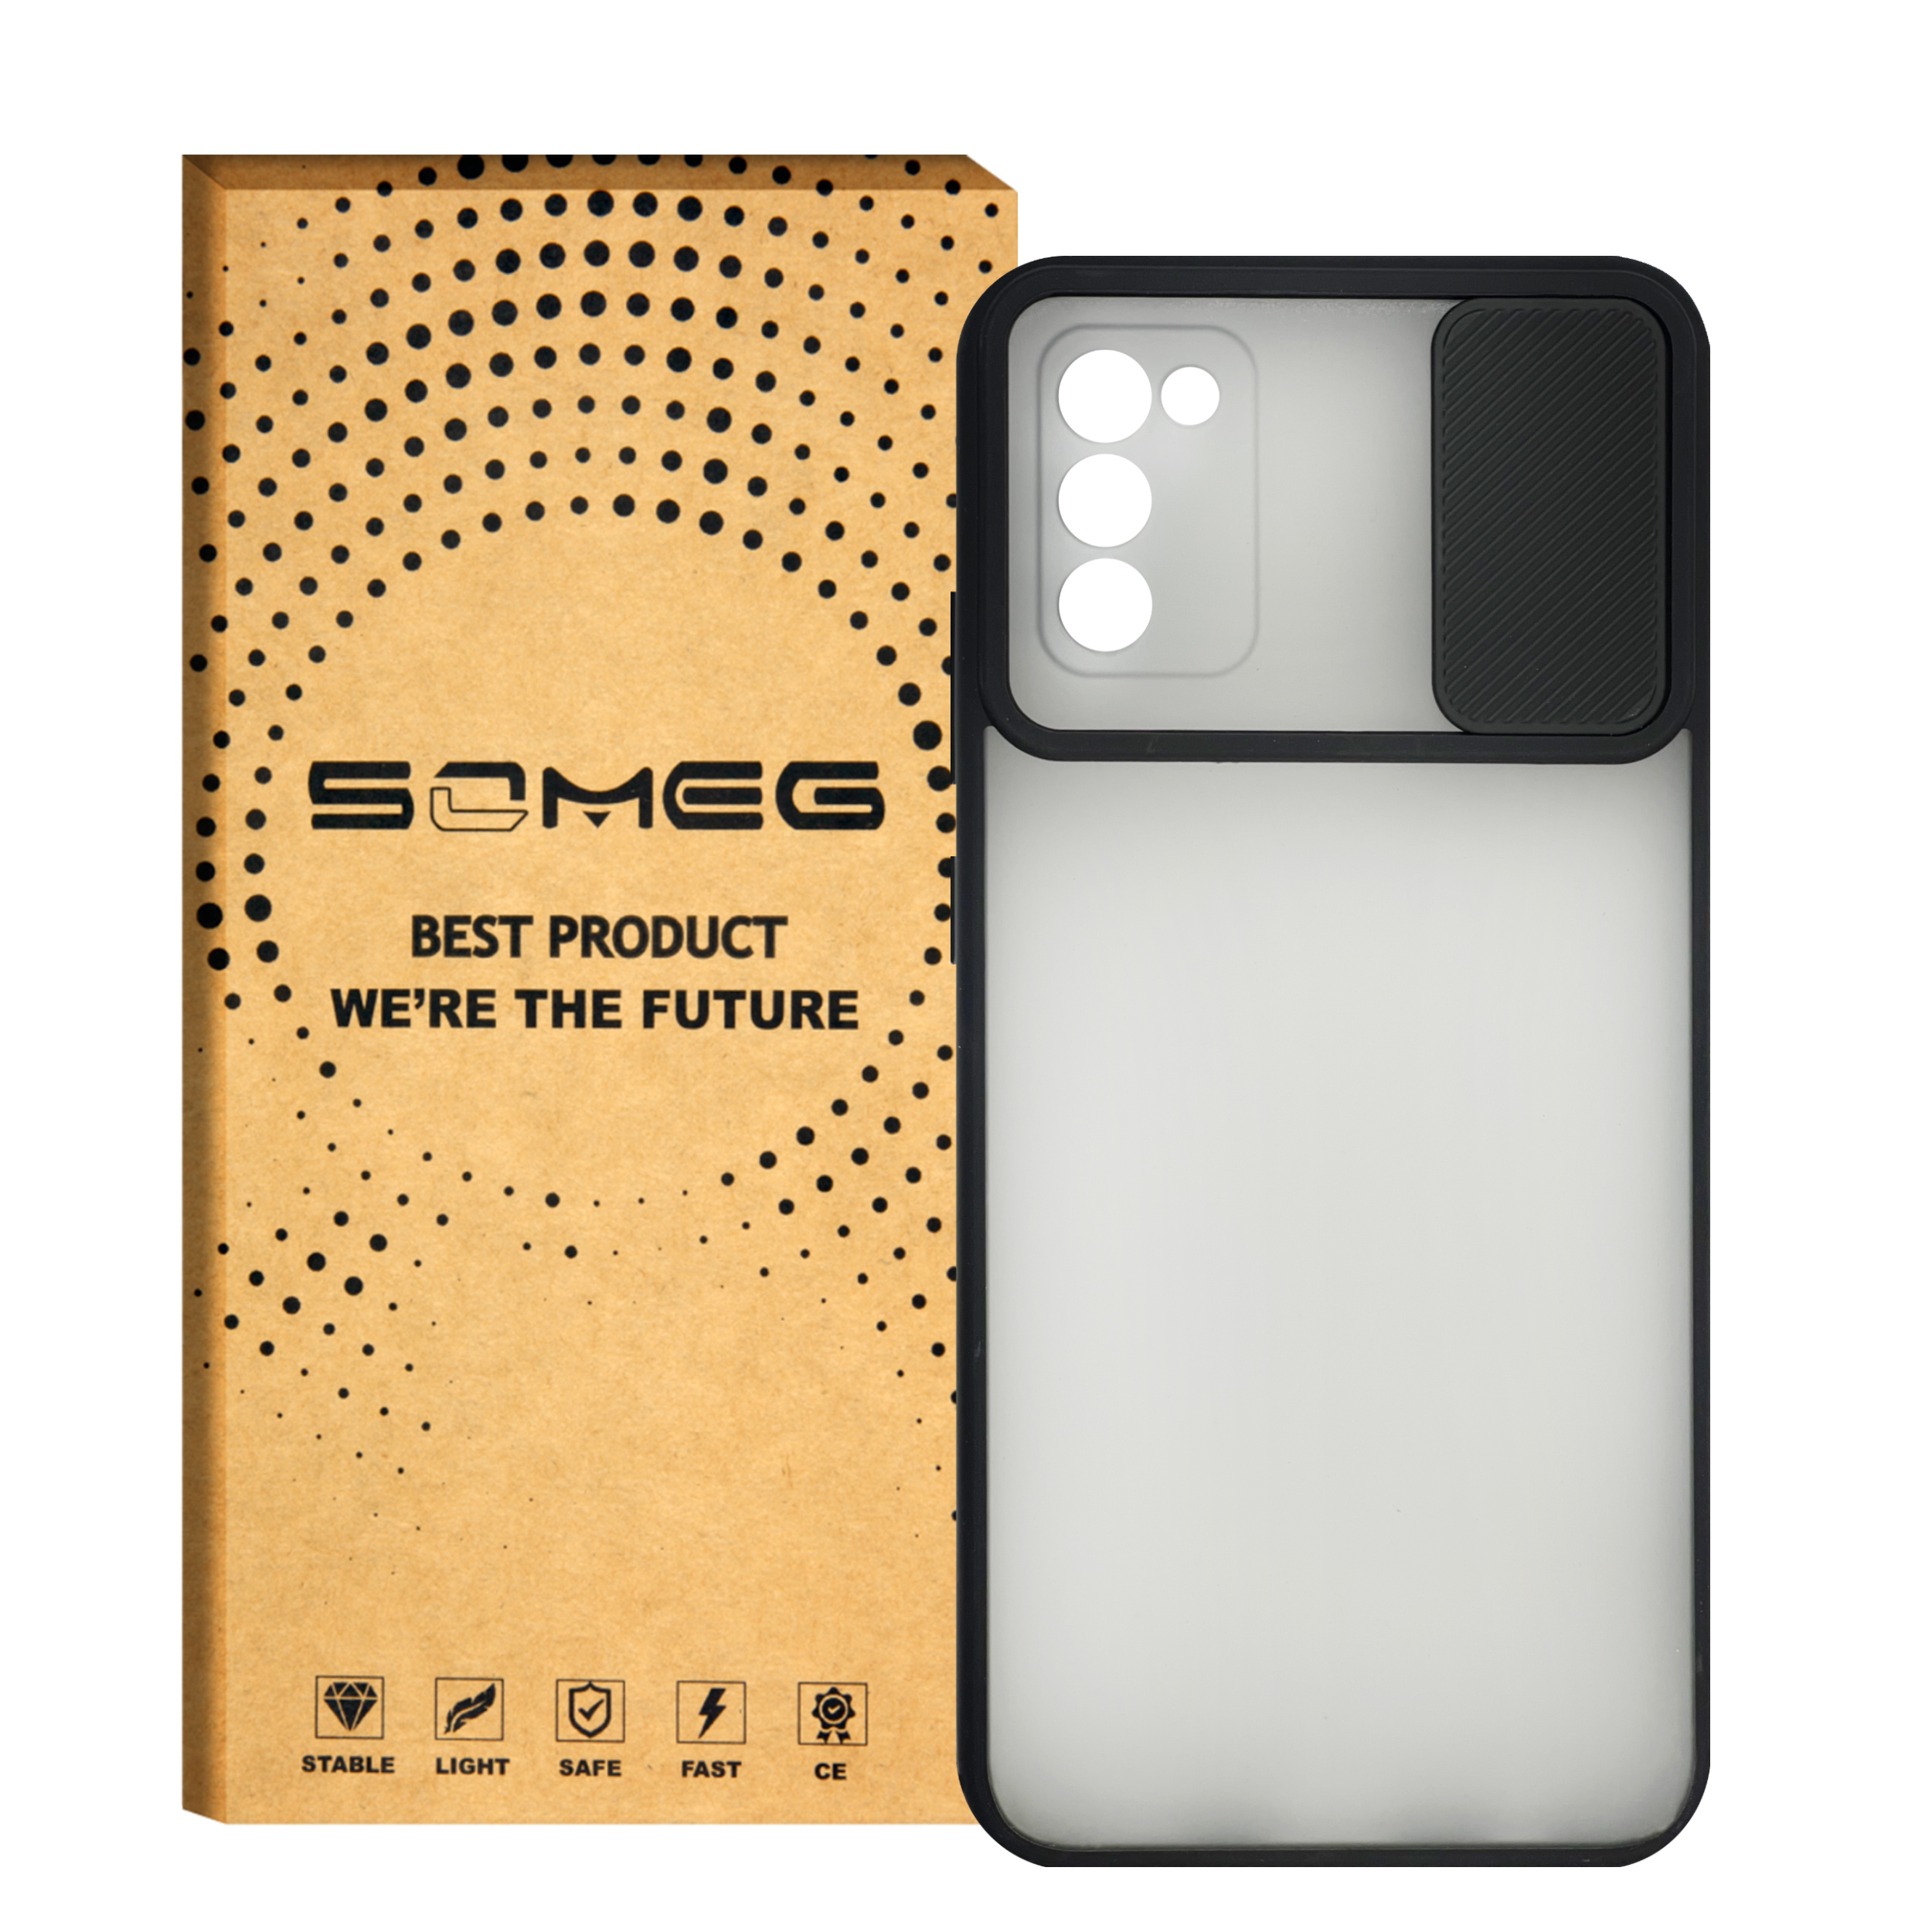  کاور سومگ مدل SMG-Slid مناسب برای گوشی موبایل سامسونگ Galaxy A02s